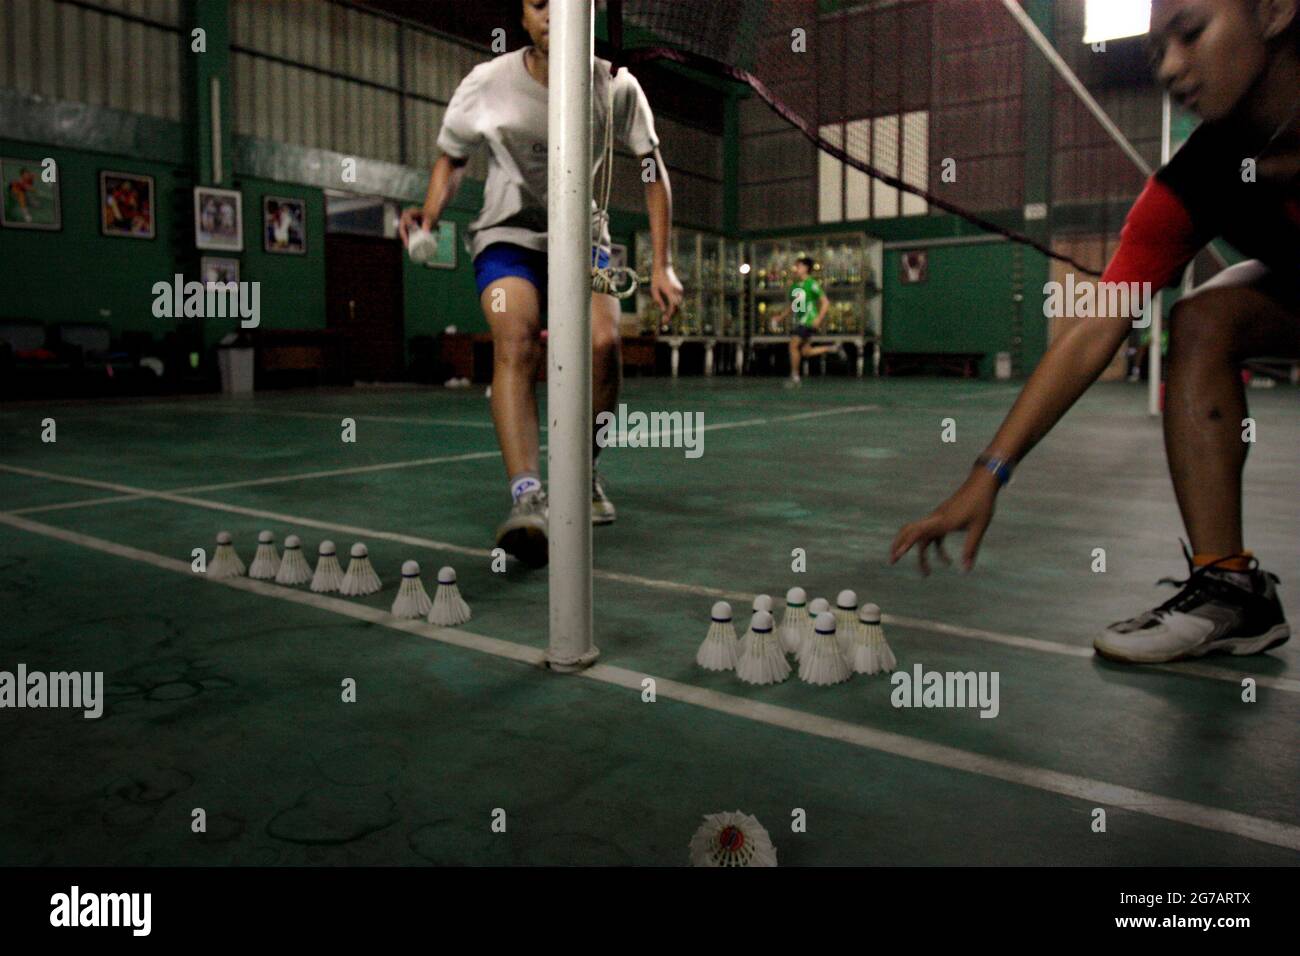 Les jeunes joueurs de badminton ont une session d'entraînement au club de badminton Jaya Raya à Jakarta, en Indonésie, photographié dans un fond d'armoire à trophées et une photo de l'ancien joueur vedette du club, Susi Susanti, médaillé d'or olympique. Banque D'Images